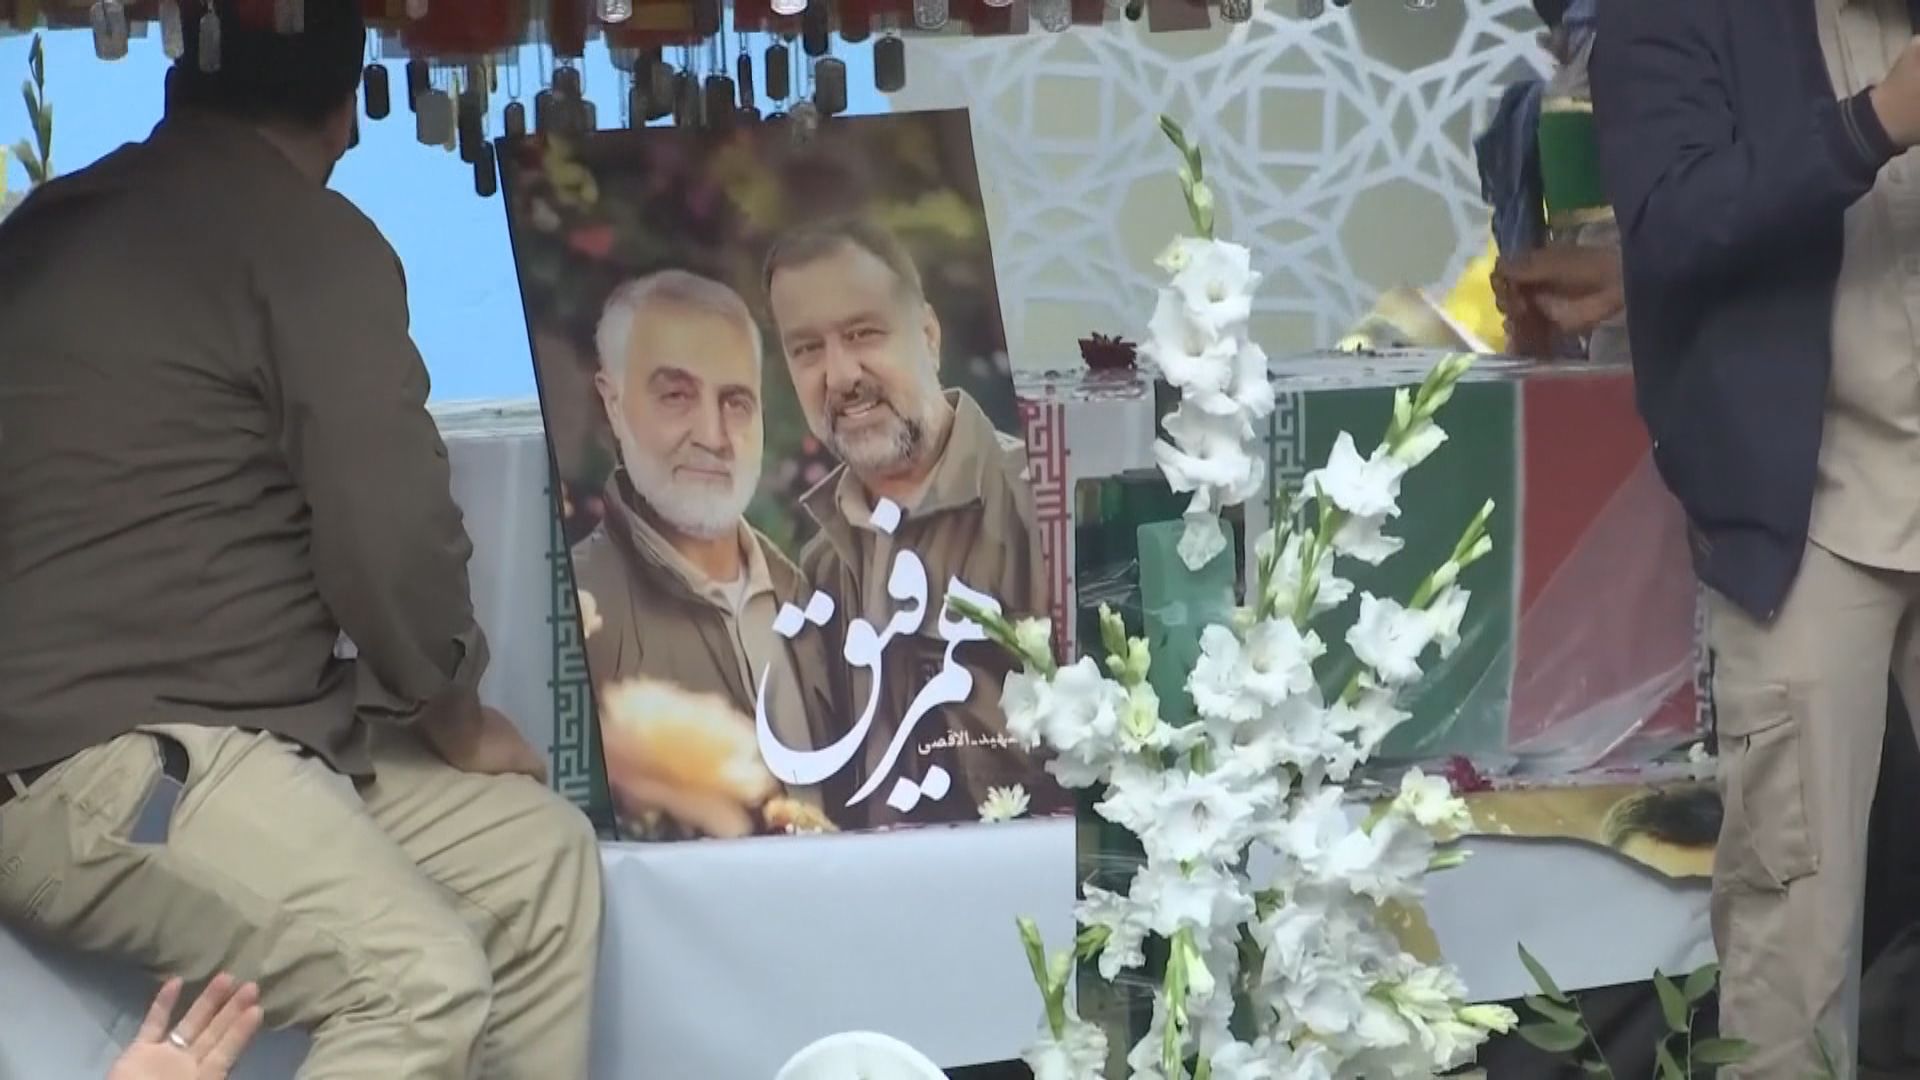 遇襲身亡伊朗革命衛隊高層穆薩維喪禮舉行